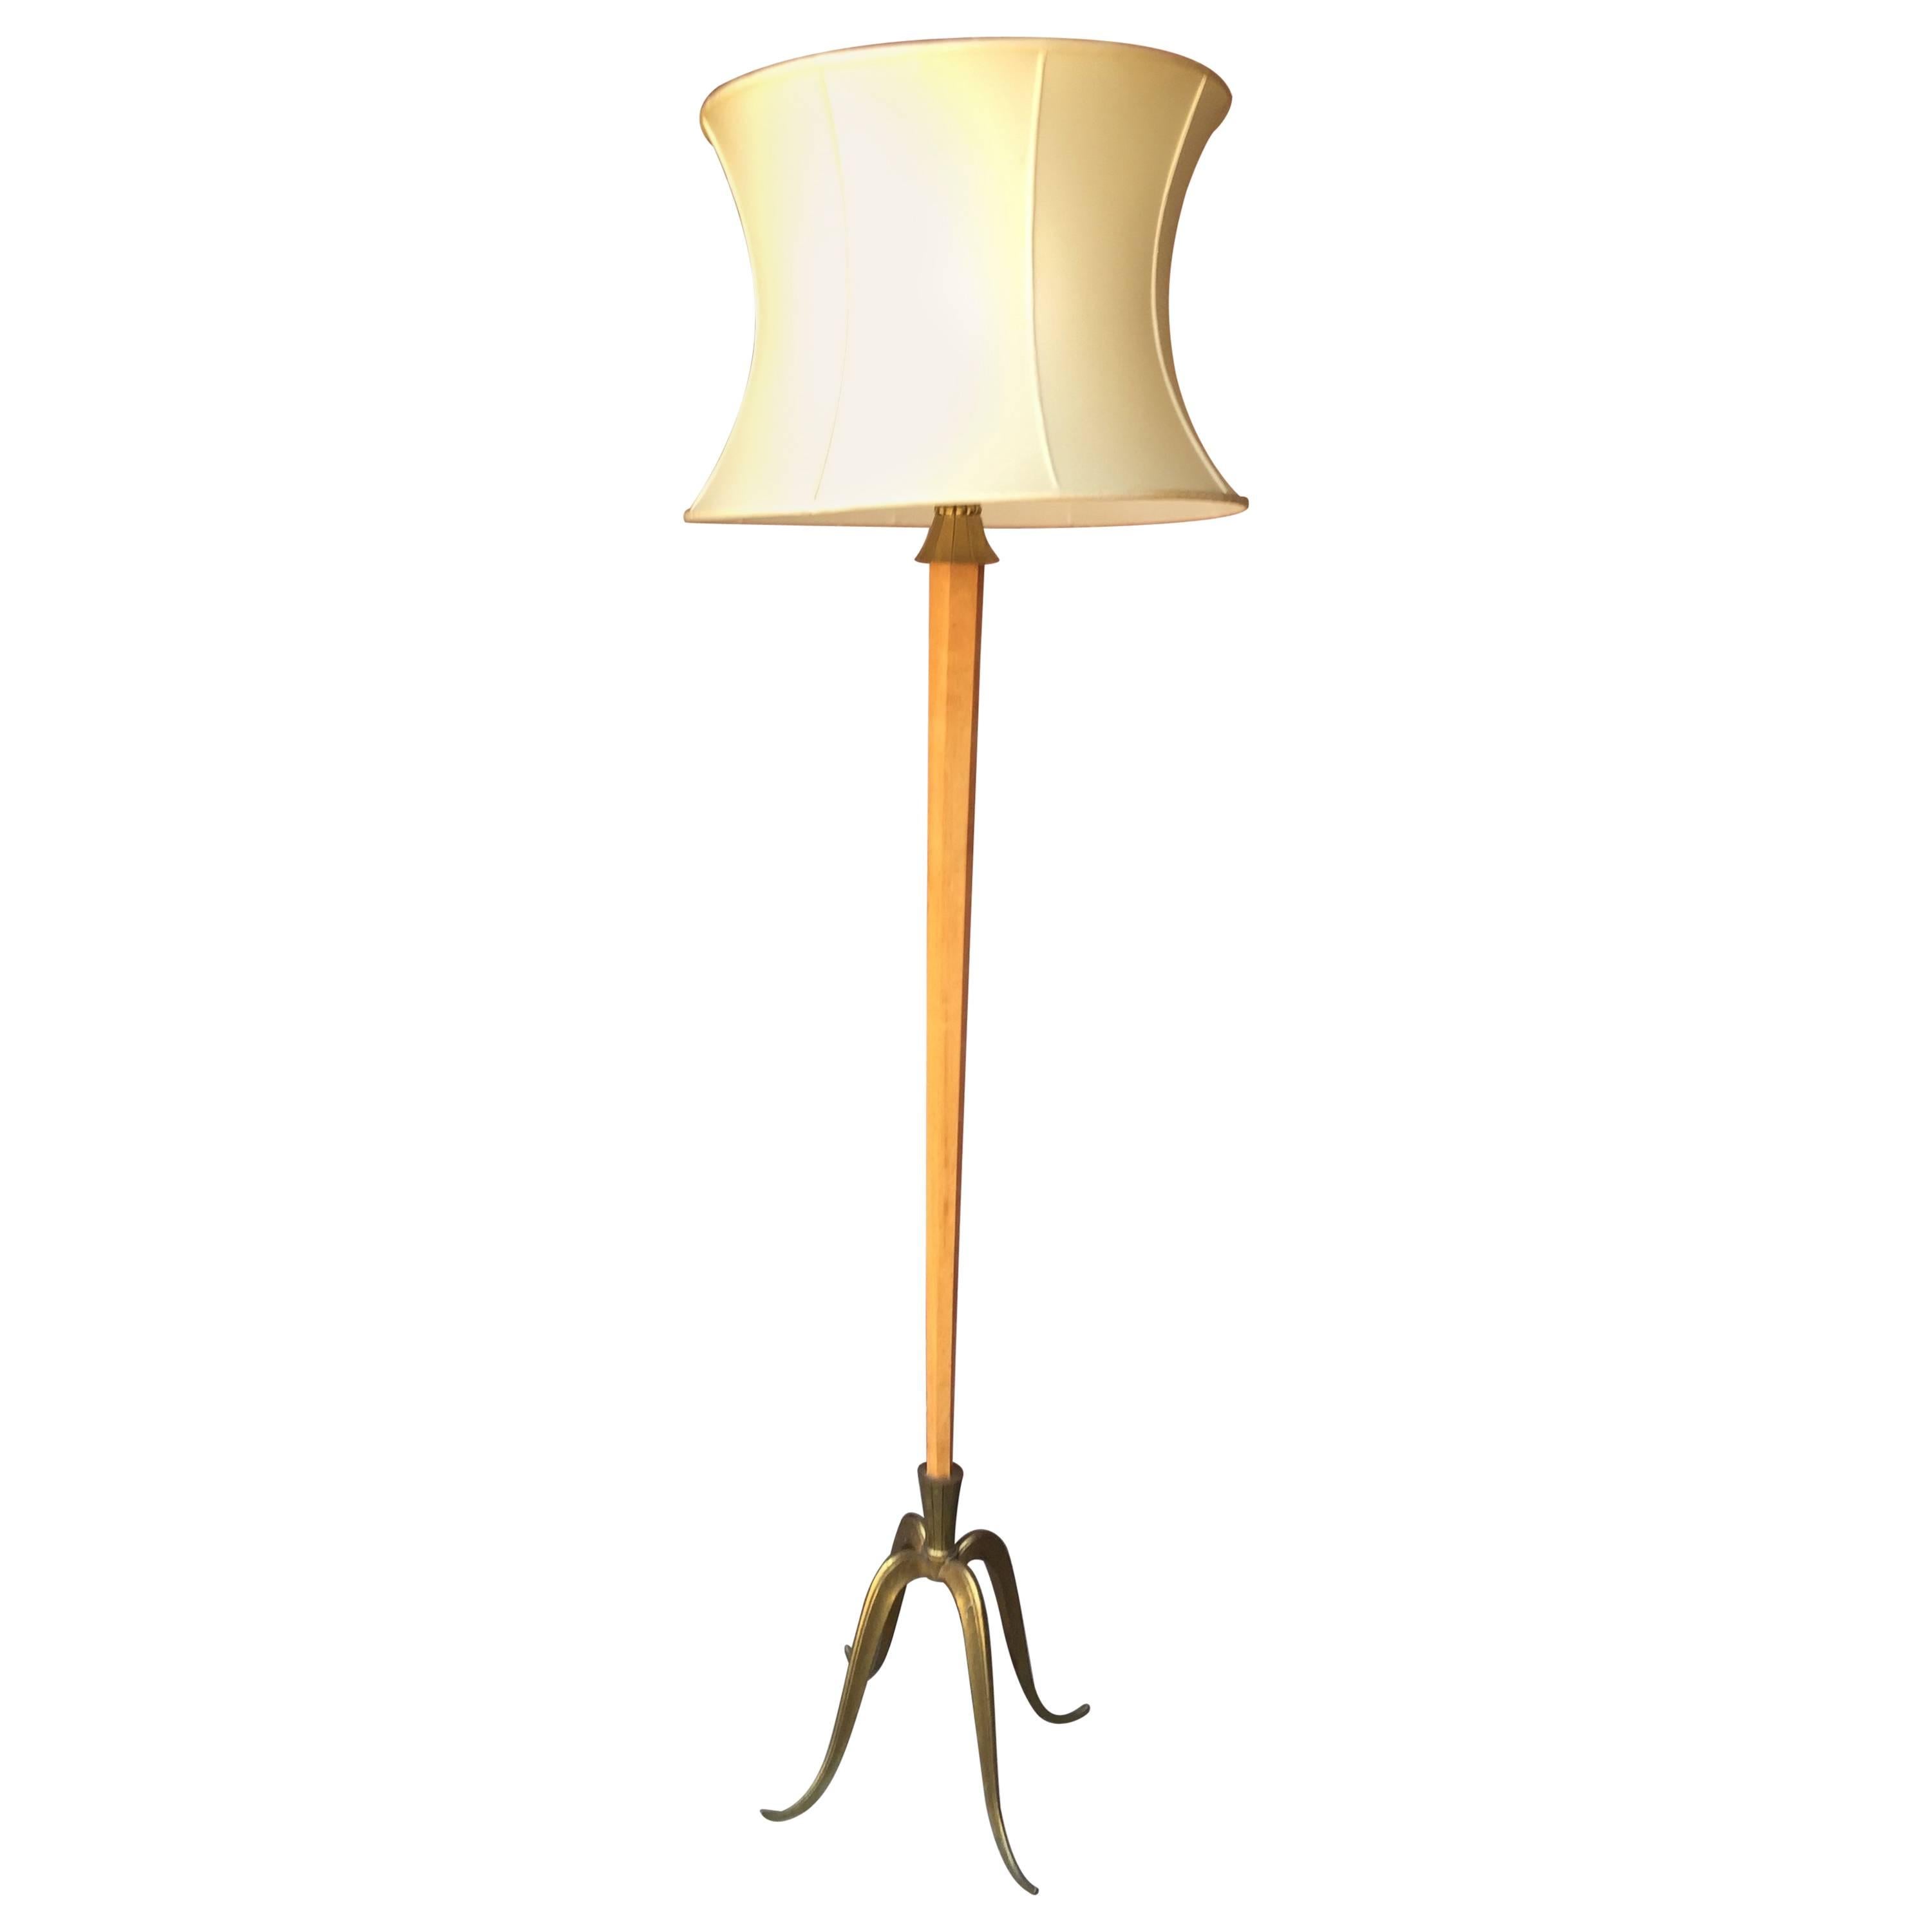 Stehlampe im Deko-Stil, André Arbus zugeschrieben